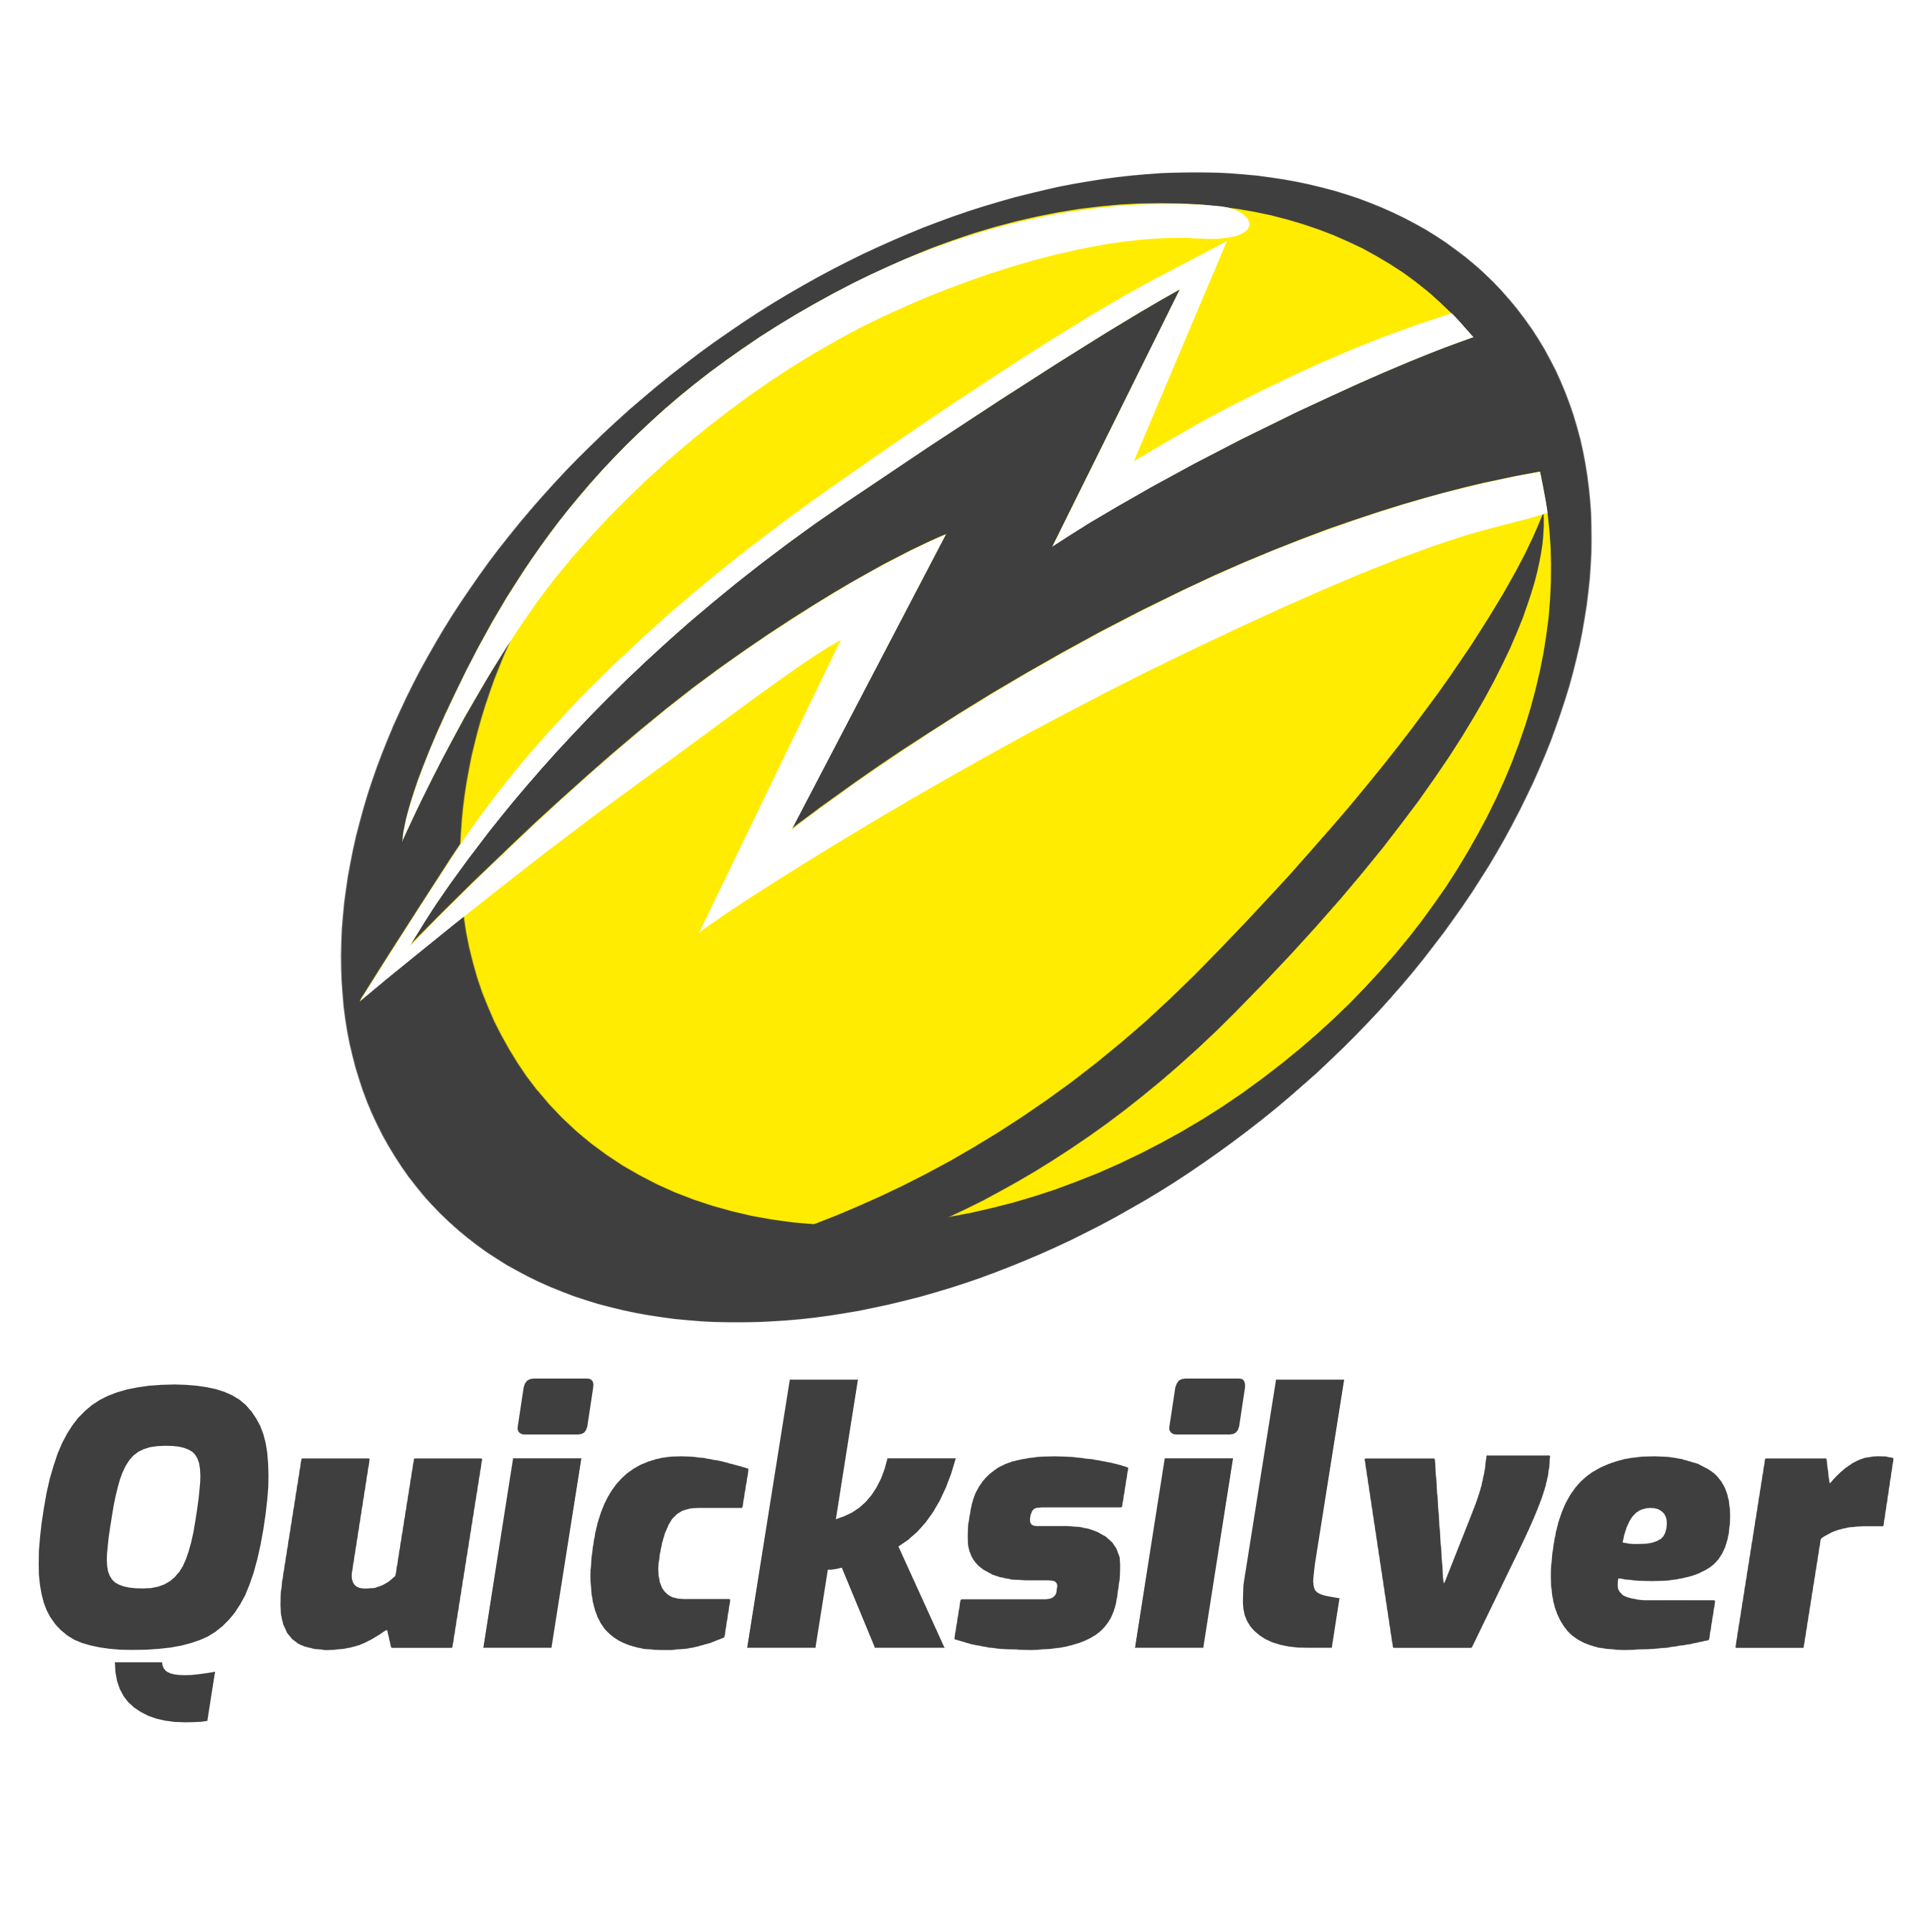 quicksilver-logo